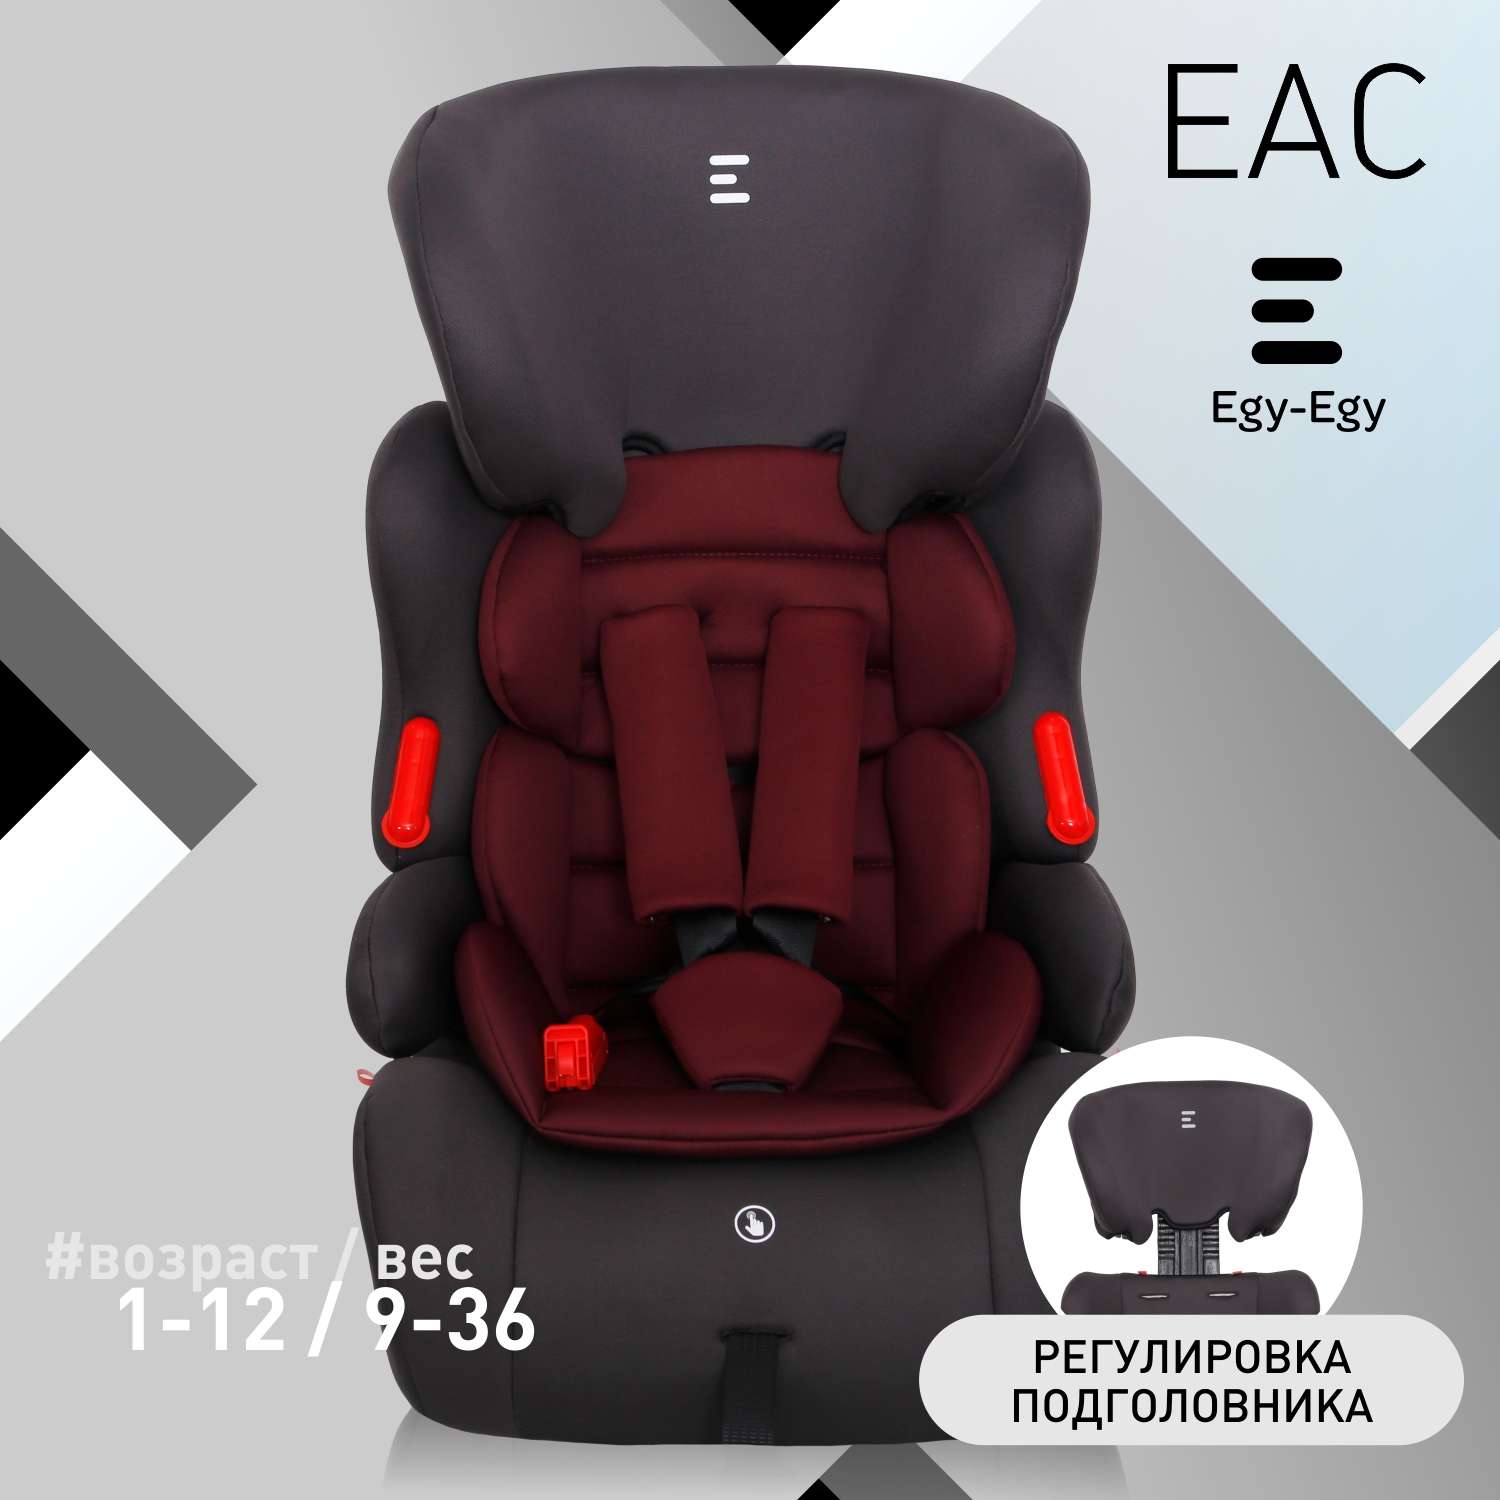 Детское автокресло Еду-Еду УУД KS 516 Lux гр. I/II/III серый красный - фото 1